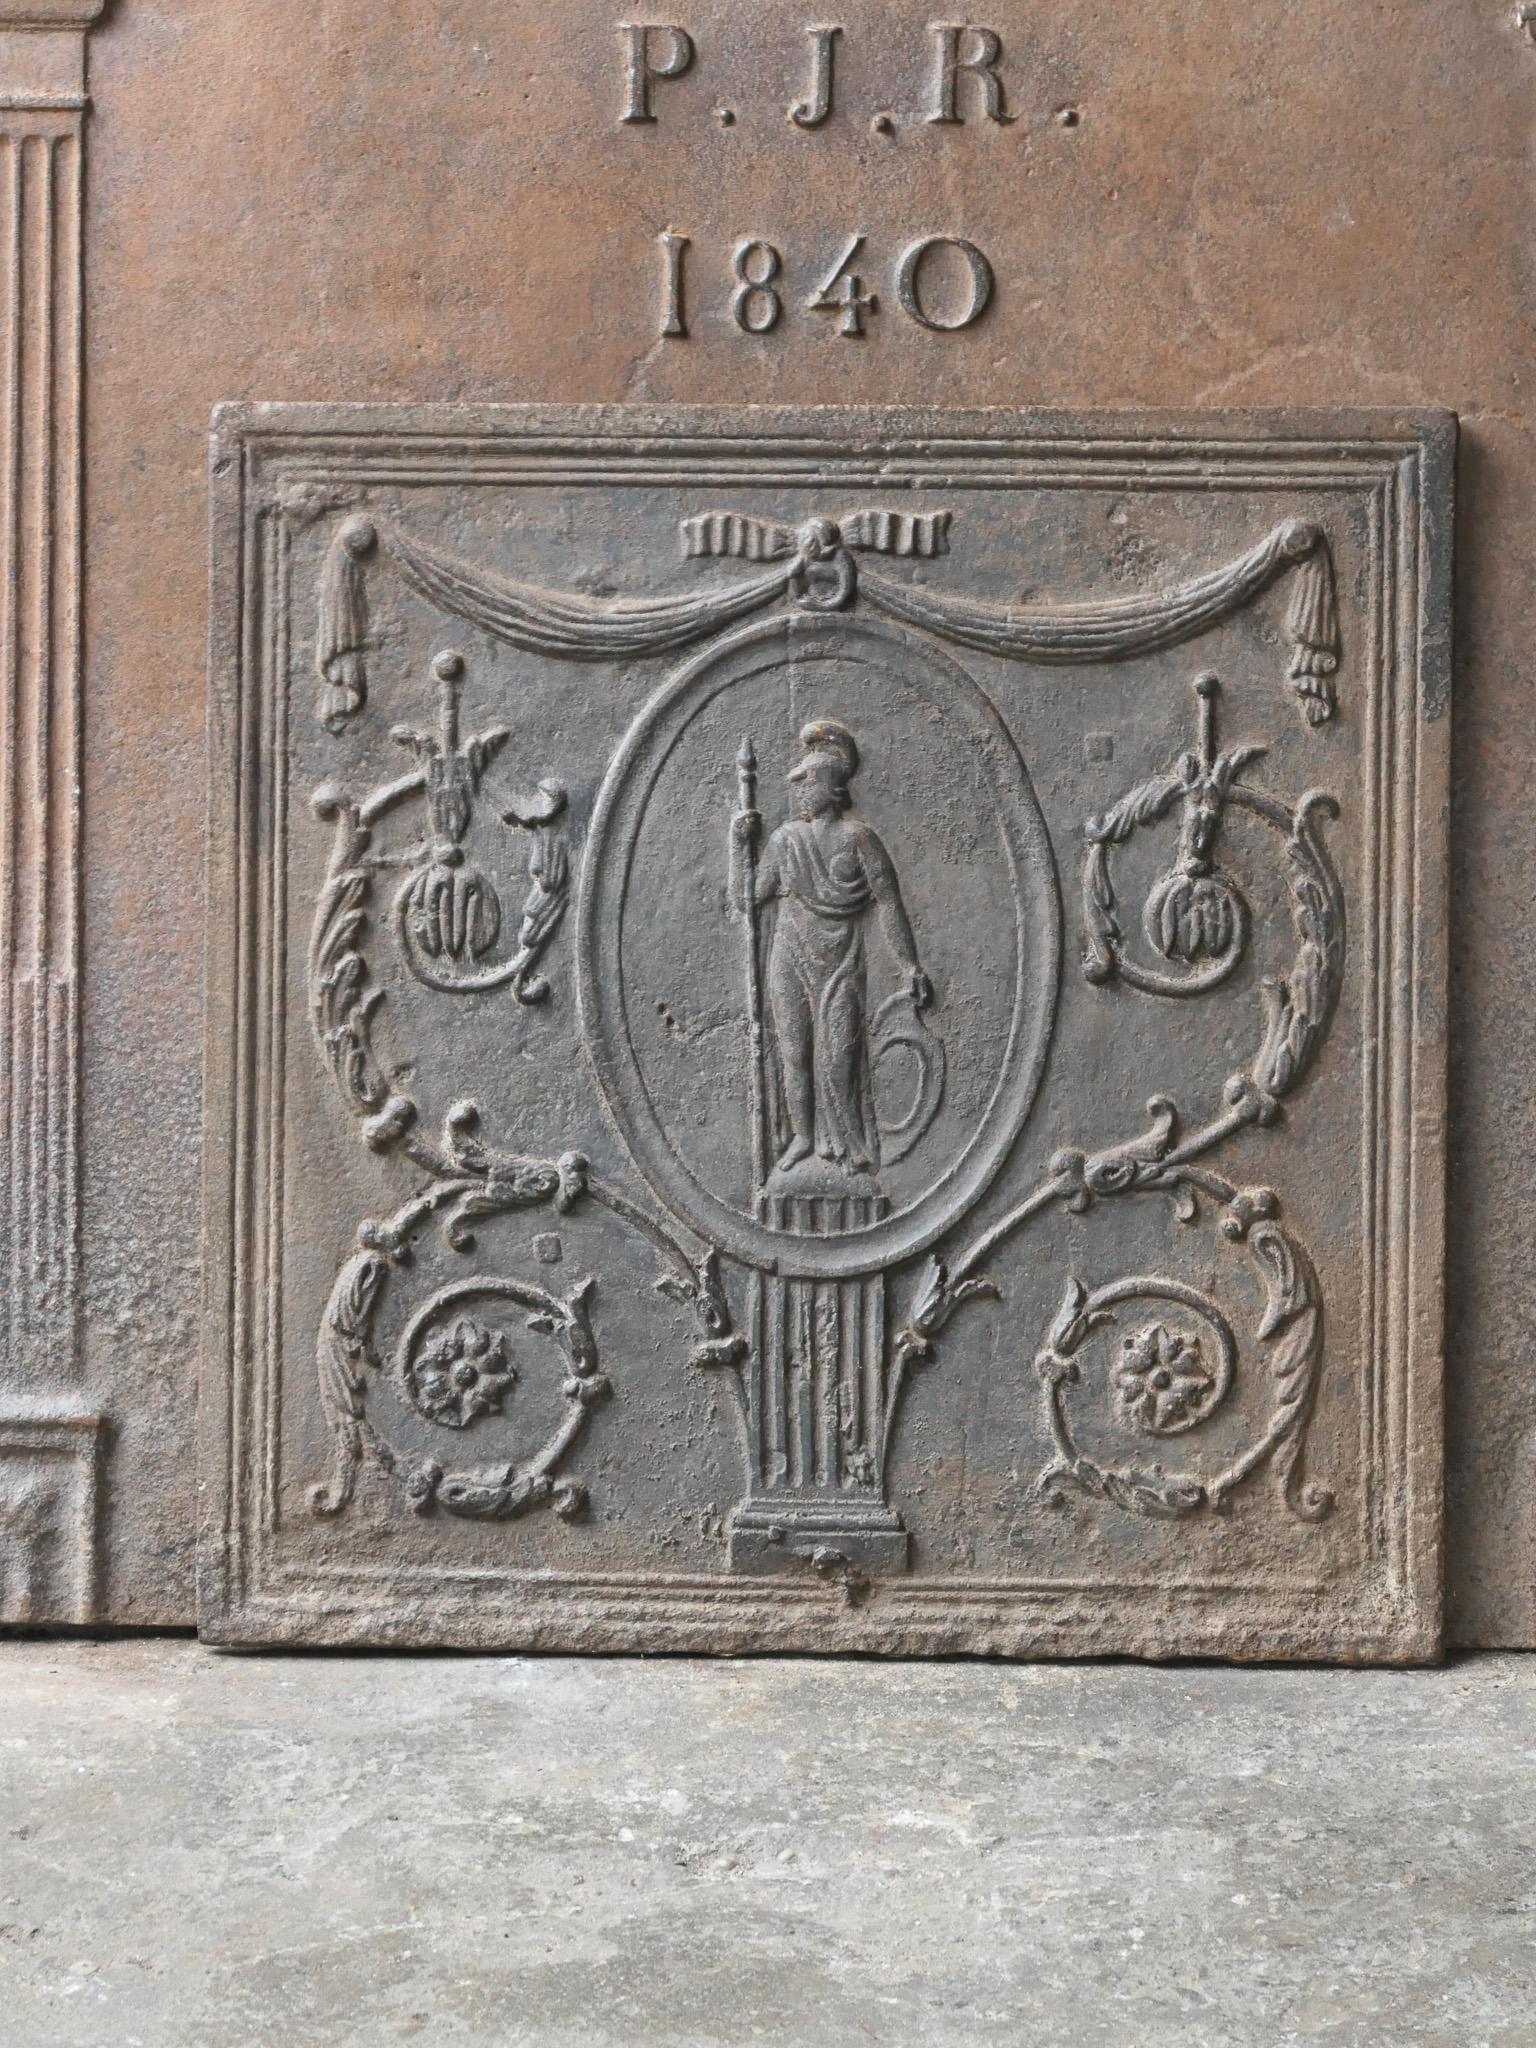 Französische neoklassizistische Kaminplatte des 18. und 19. Jahrhunderts mit der Göttin Minerva. Göttin des Wissens, des Intellekts und des Einfallsreichtums des menschlichen Geistes. Sie wird oft mit einer Eule, dem Symbol der Weisheit, abgebildet.